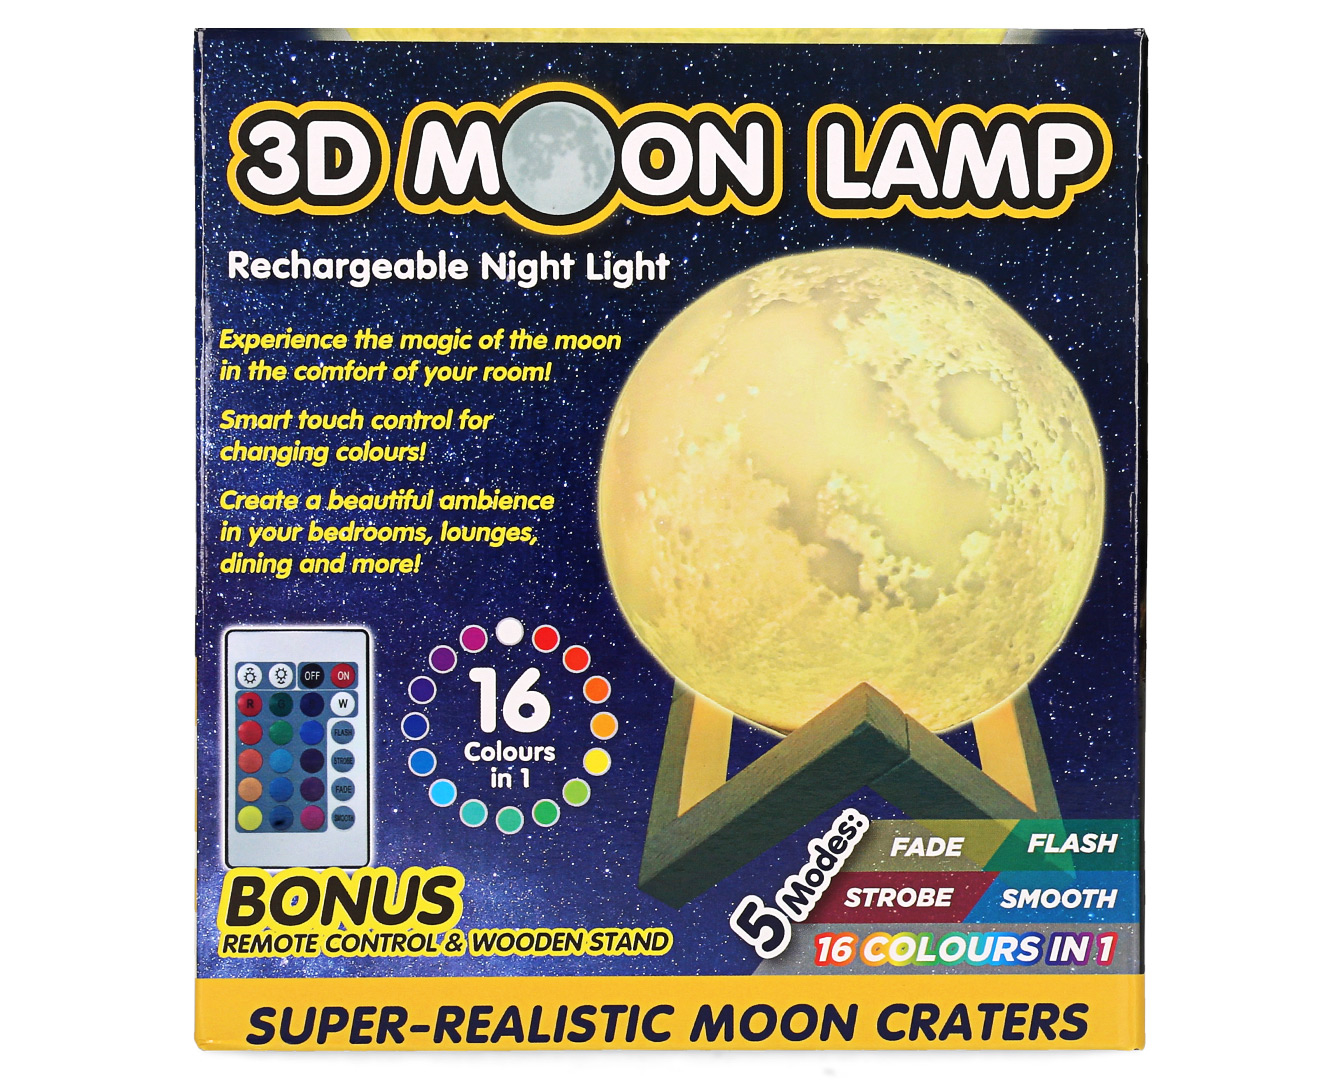 3D Moon Lamp Rechargeable Night Light | Www.catch.com.au, www.catch.com.au